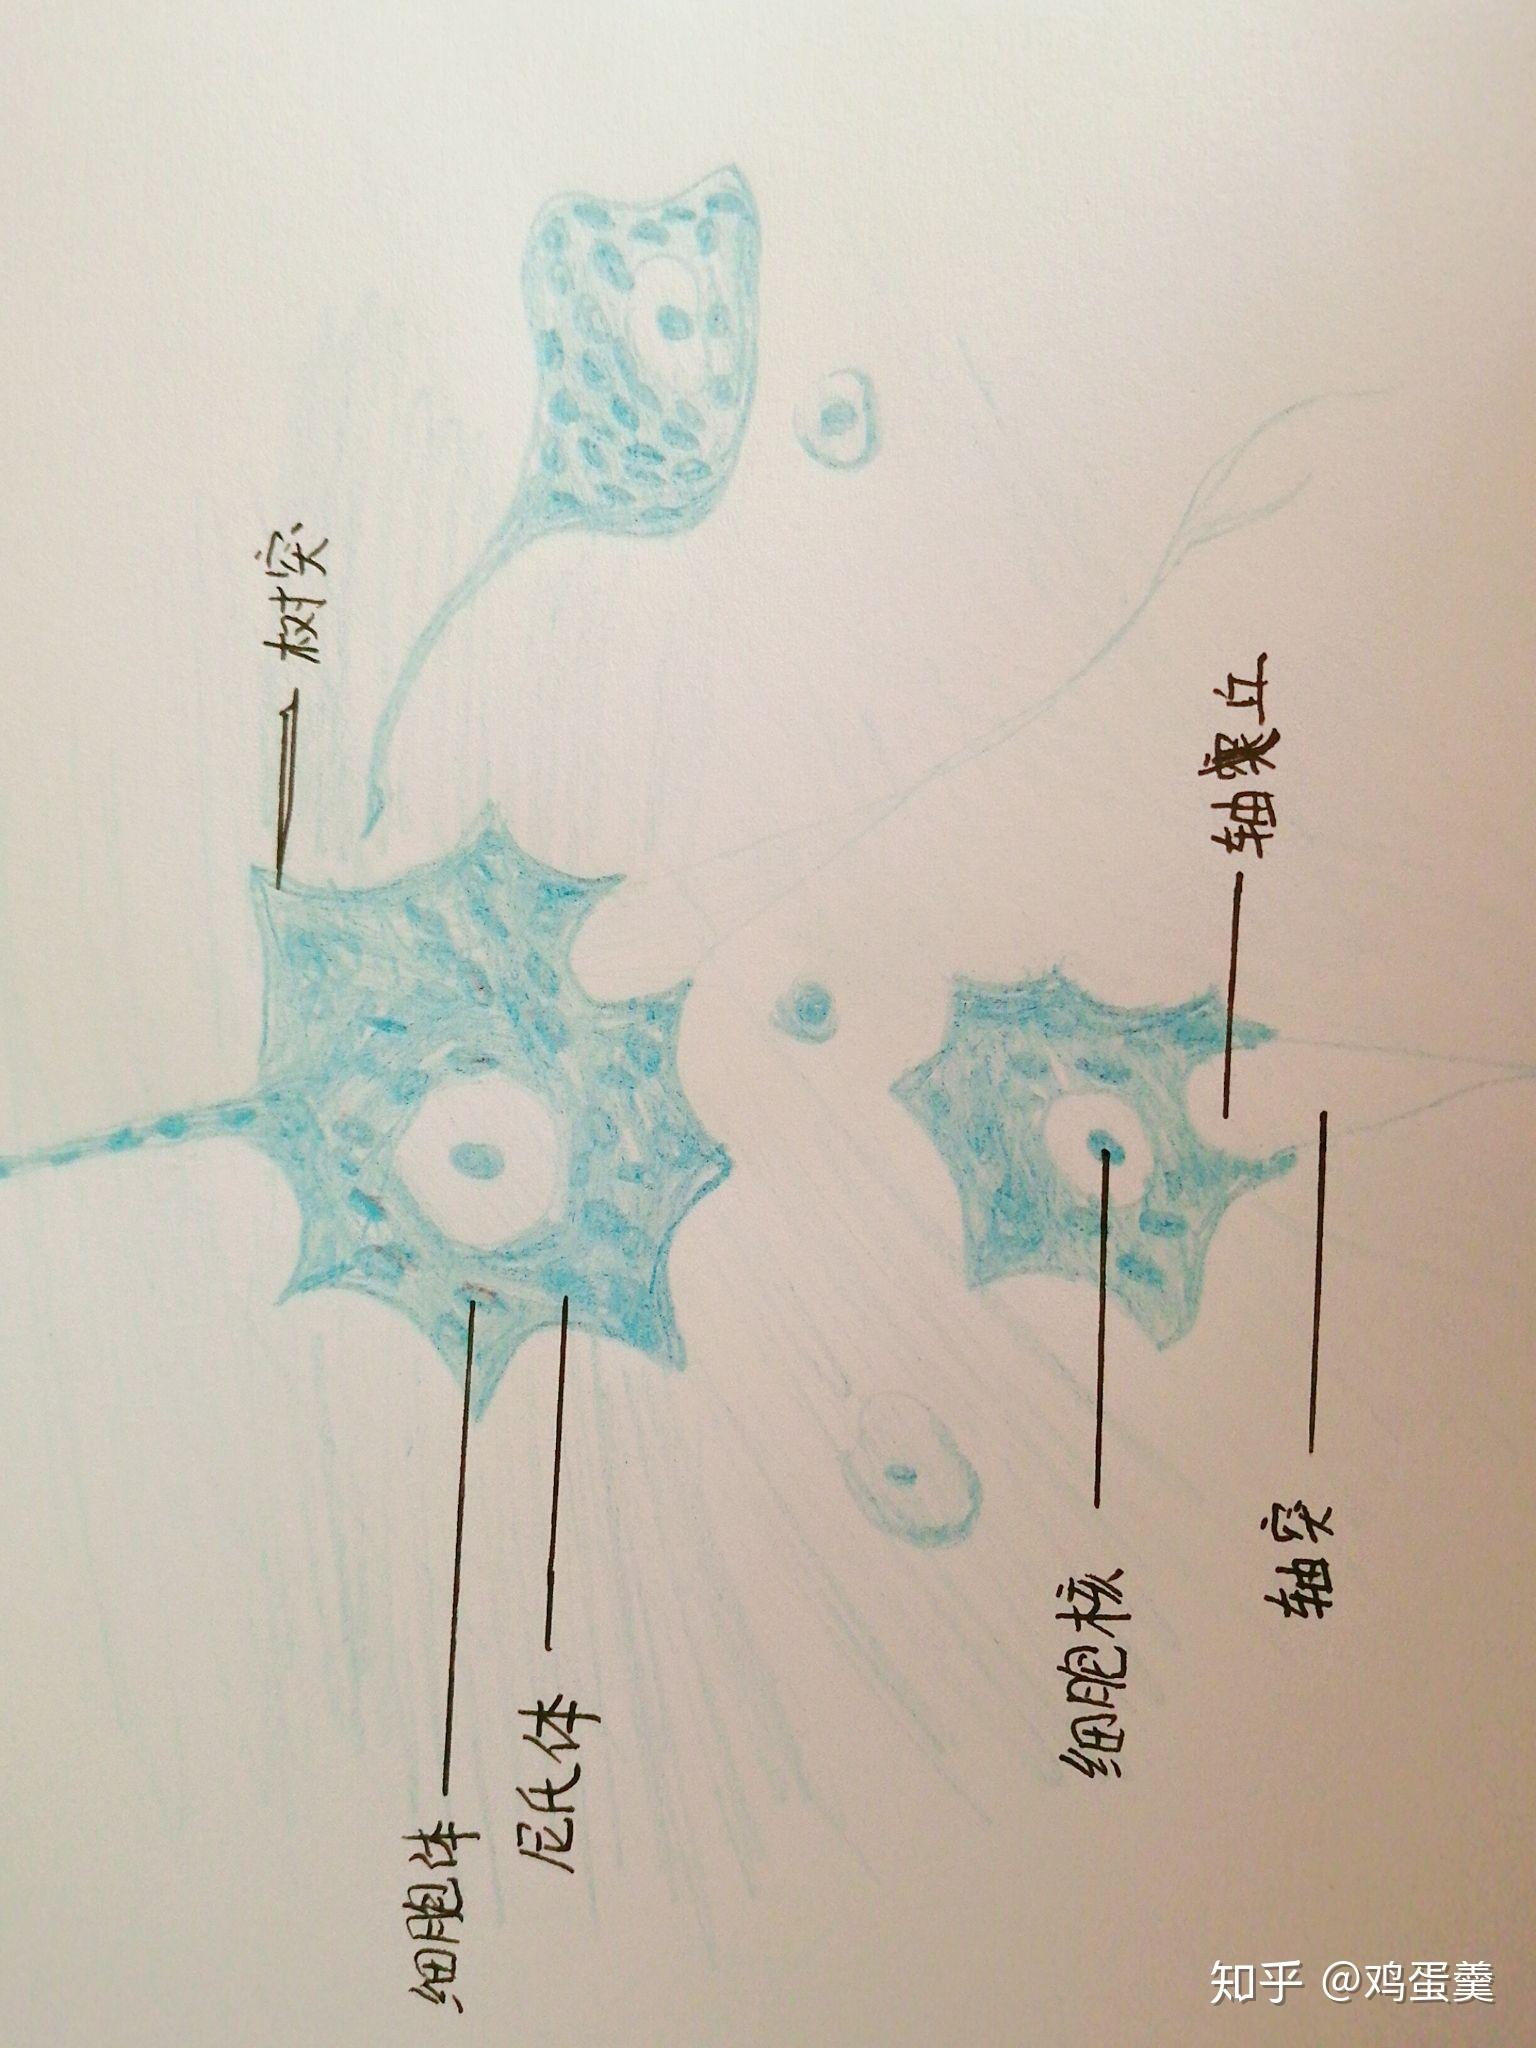 神经细胞简笔画图片